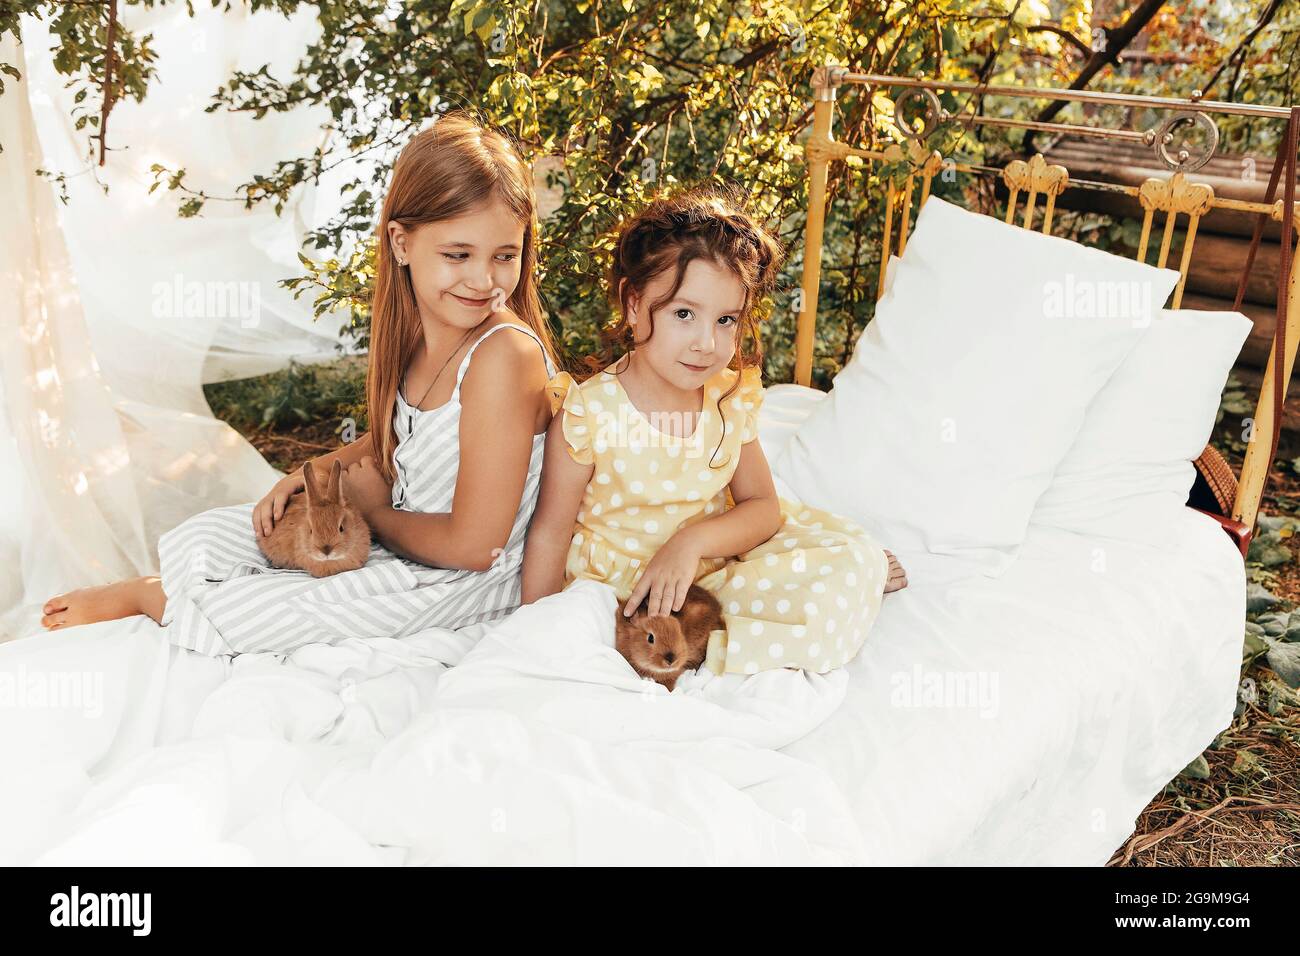 Petites jolies filles dans des robes d'été assis à l'extérieur avec des lapins, les enfants mignons regardant les lapins avec le sourire léger appréciant passer du temps avec Banque D'Images